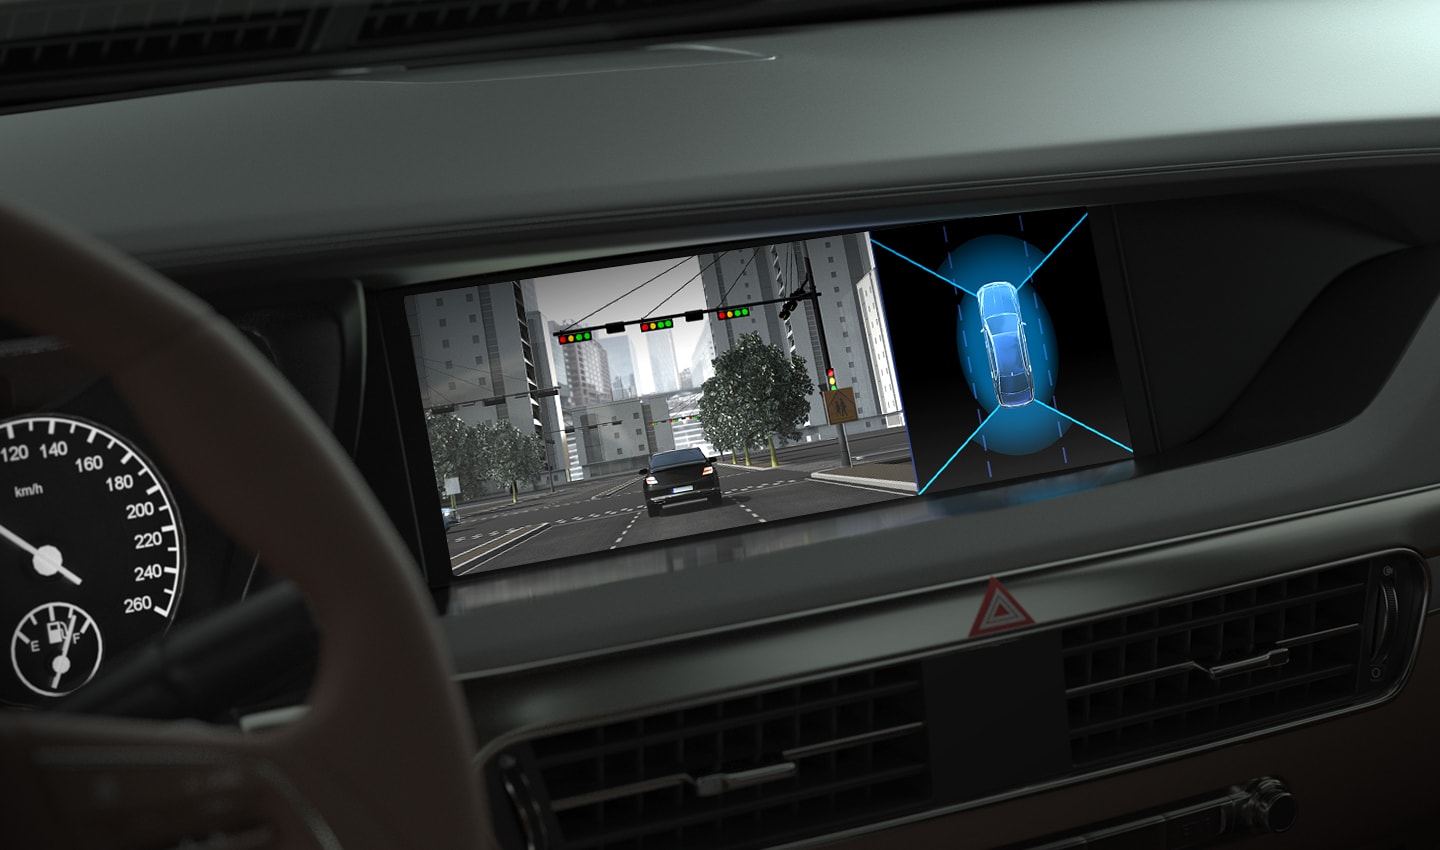 说明车载全景摄像的 LED 闪烁抑制功能的图片。